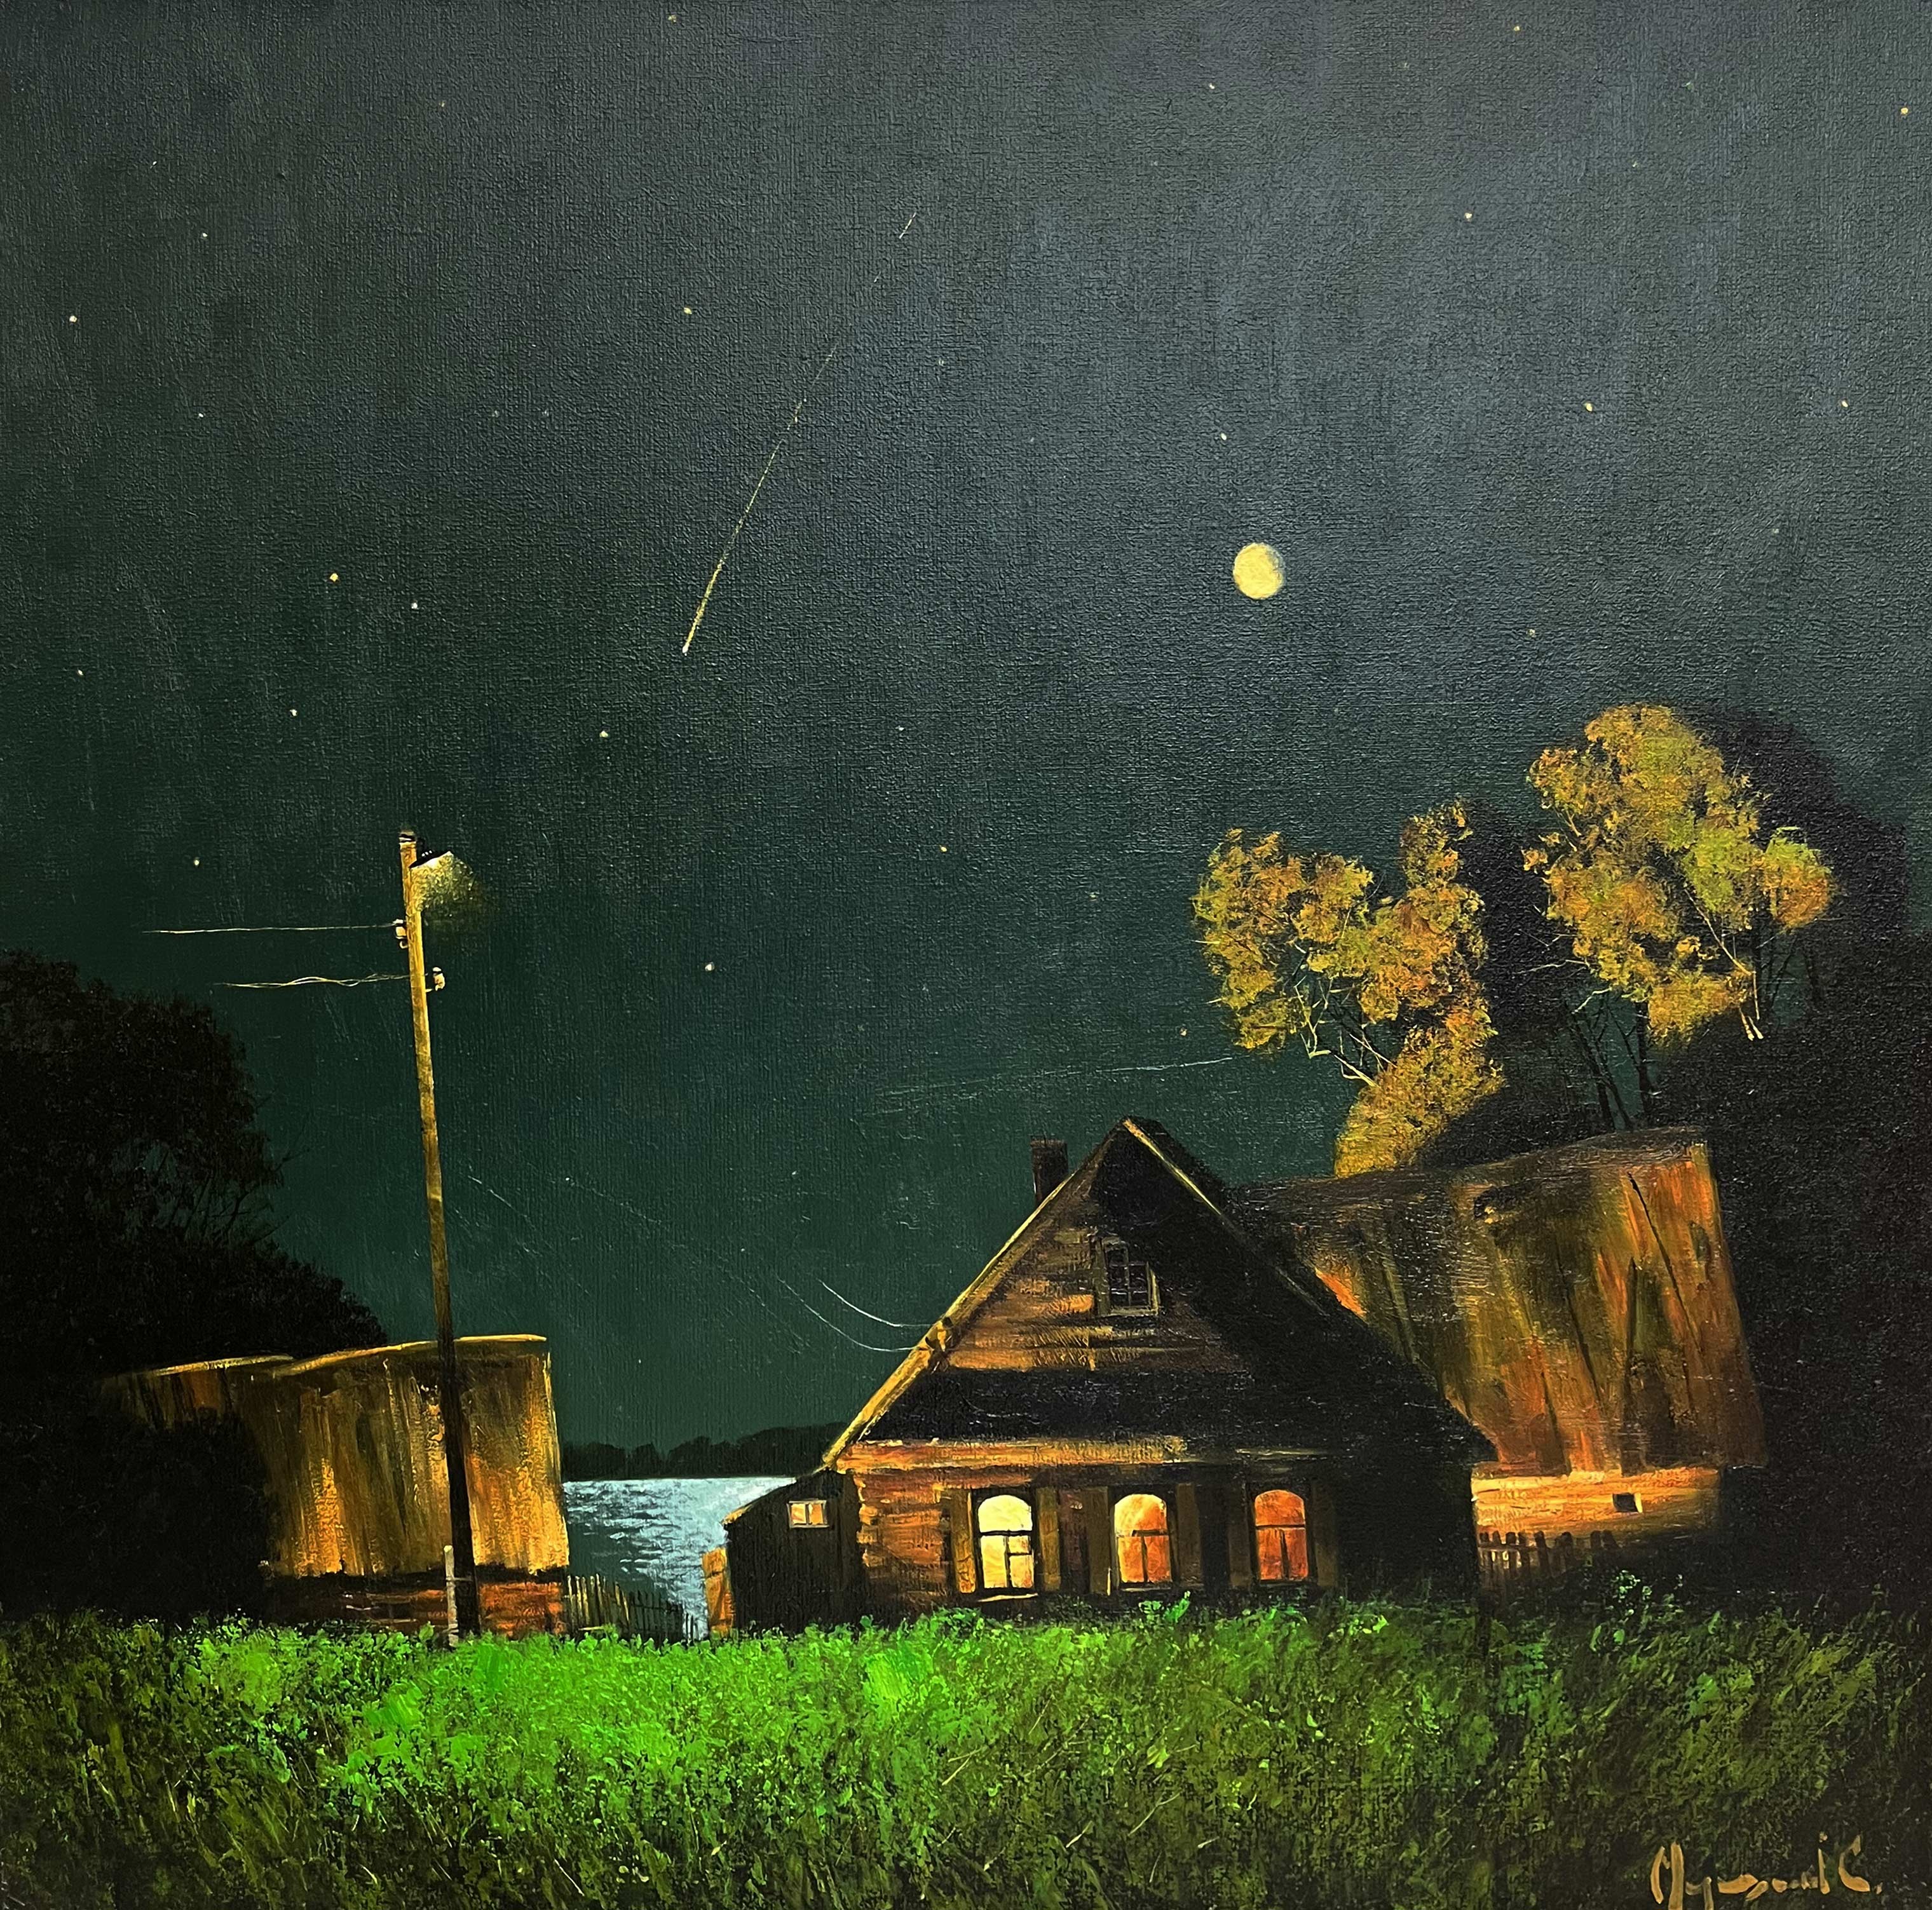 Full Moon - 1, Stas Miroshnikov, Buy the painting Oil